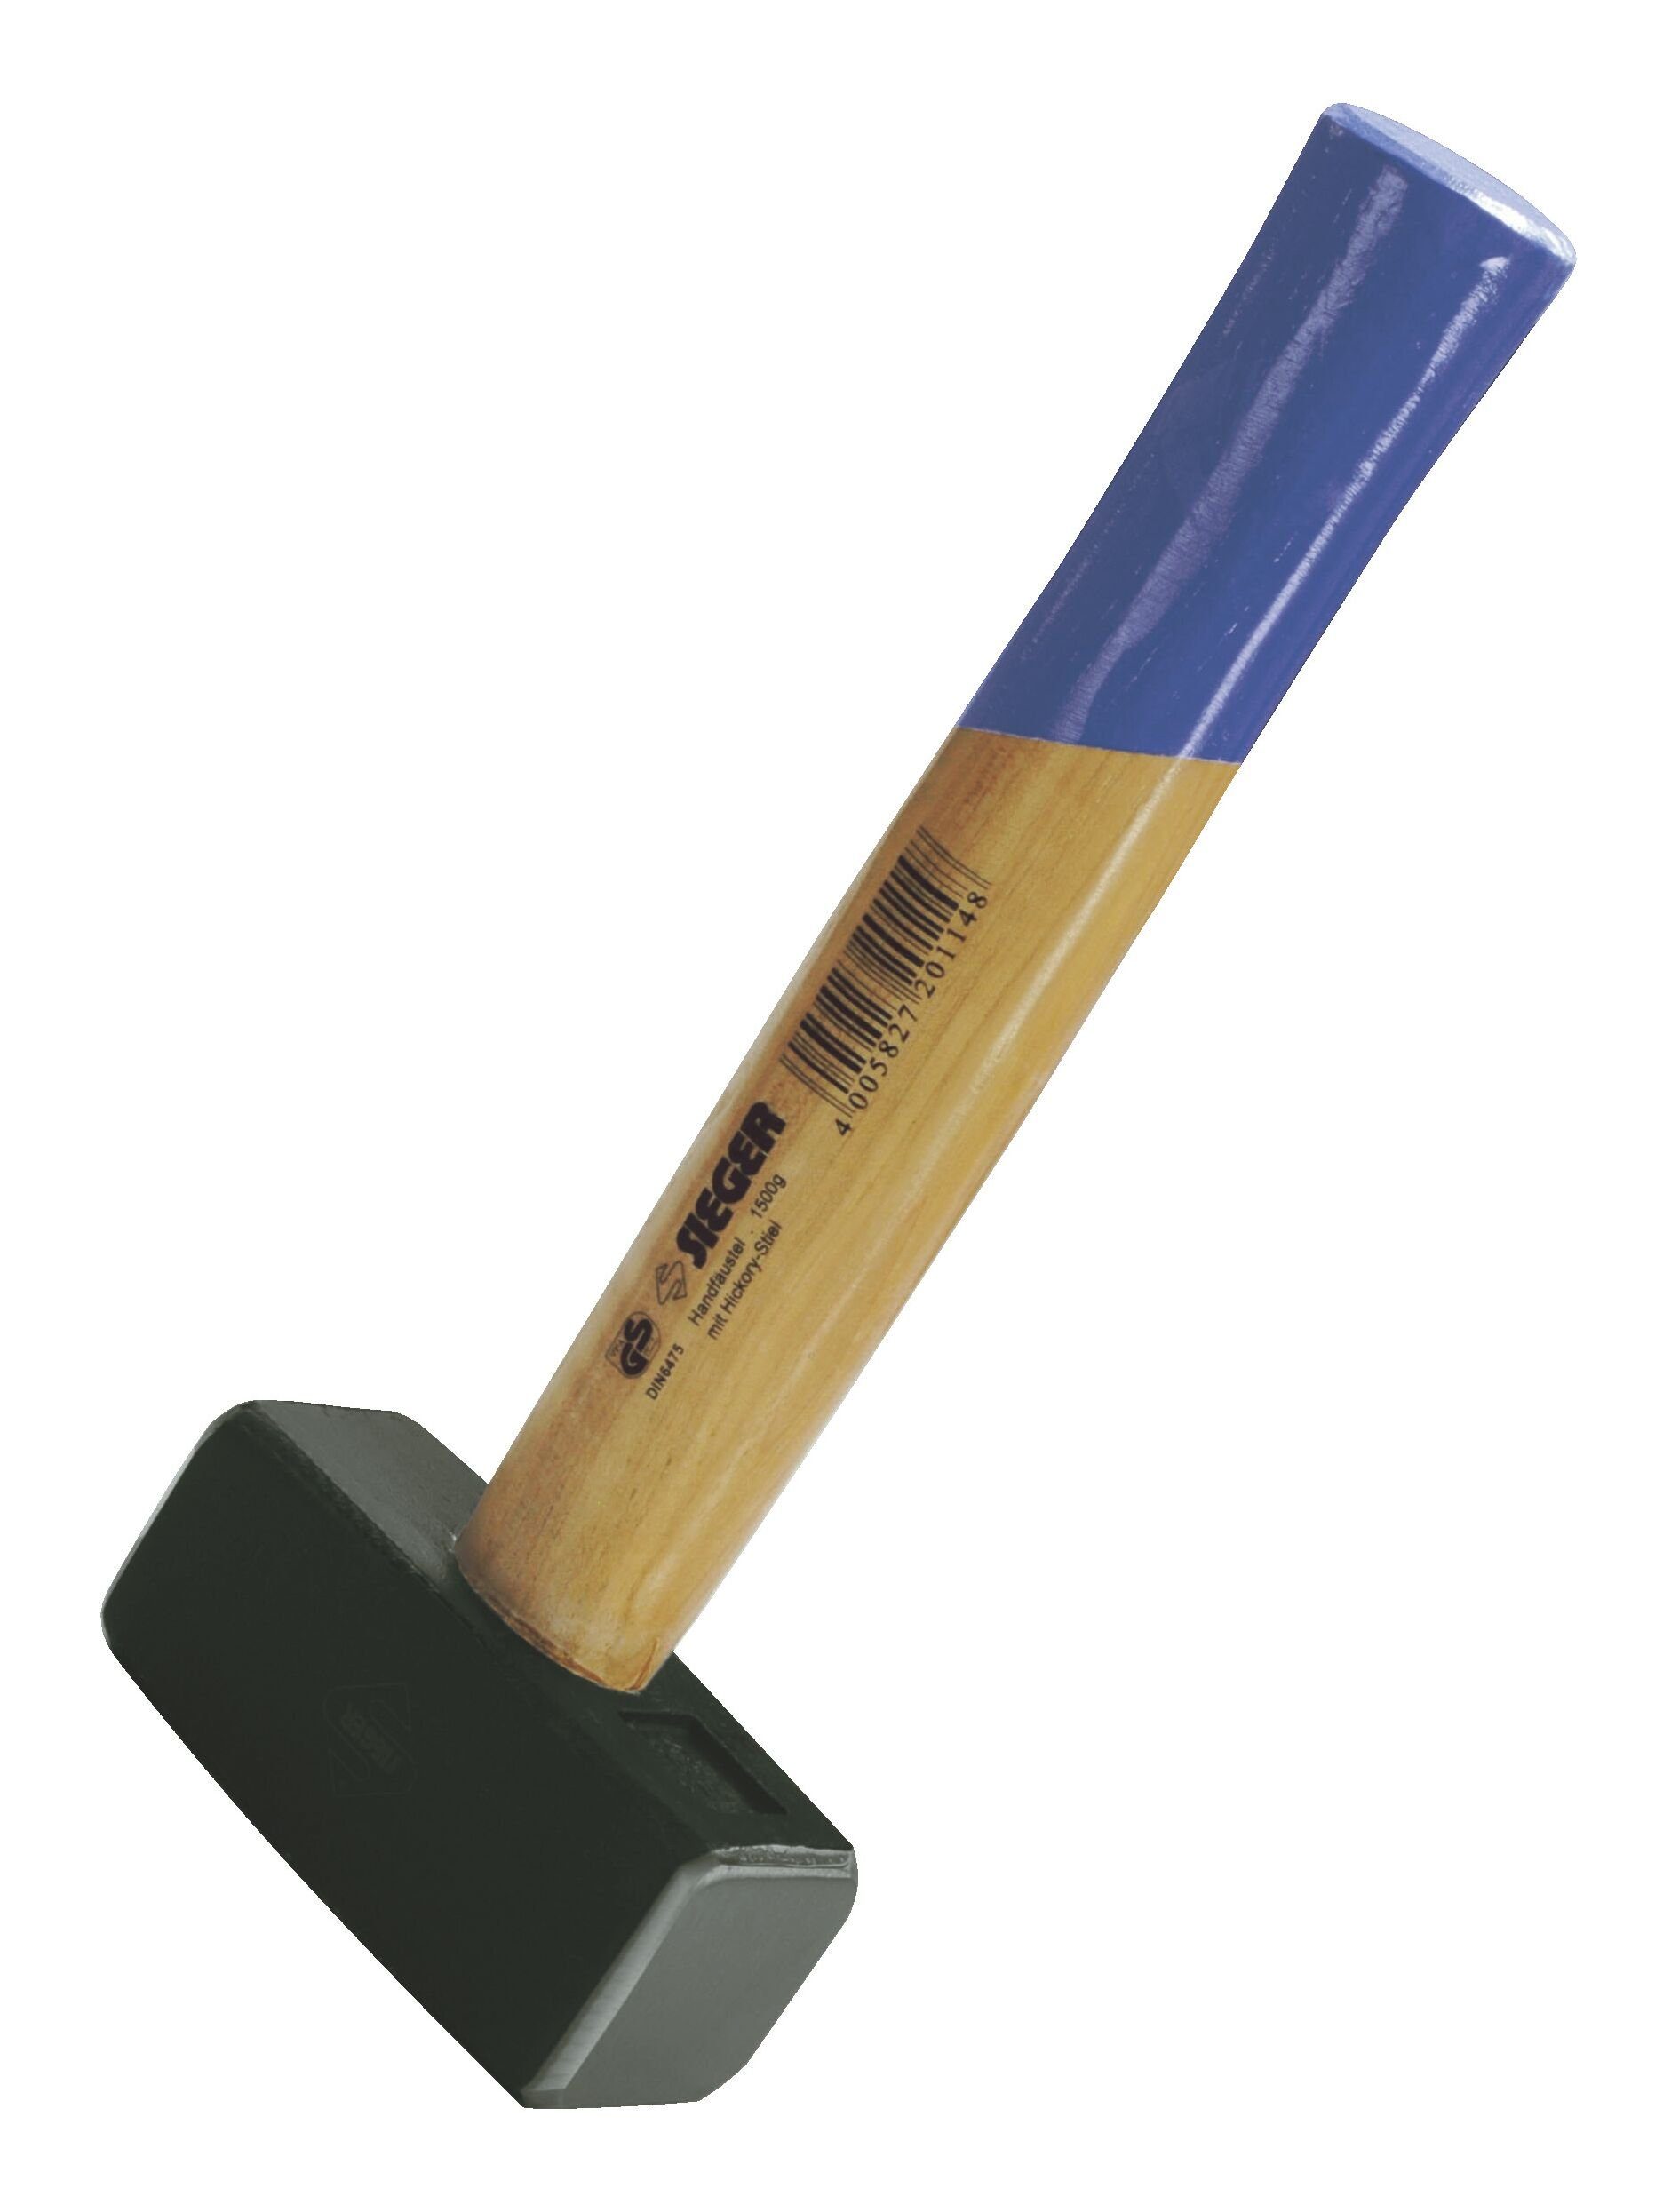 IDEALSPATEN Hammer, Fäustel 1500 g Hickorystiel